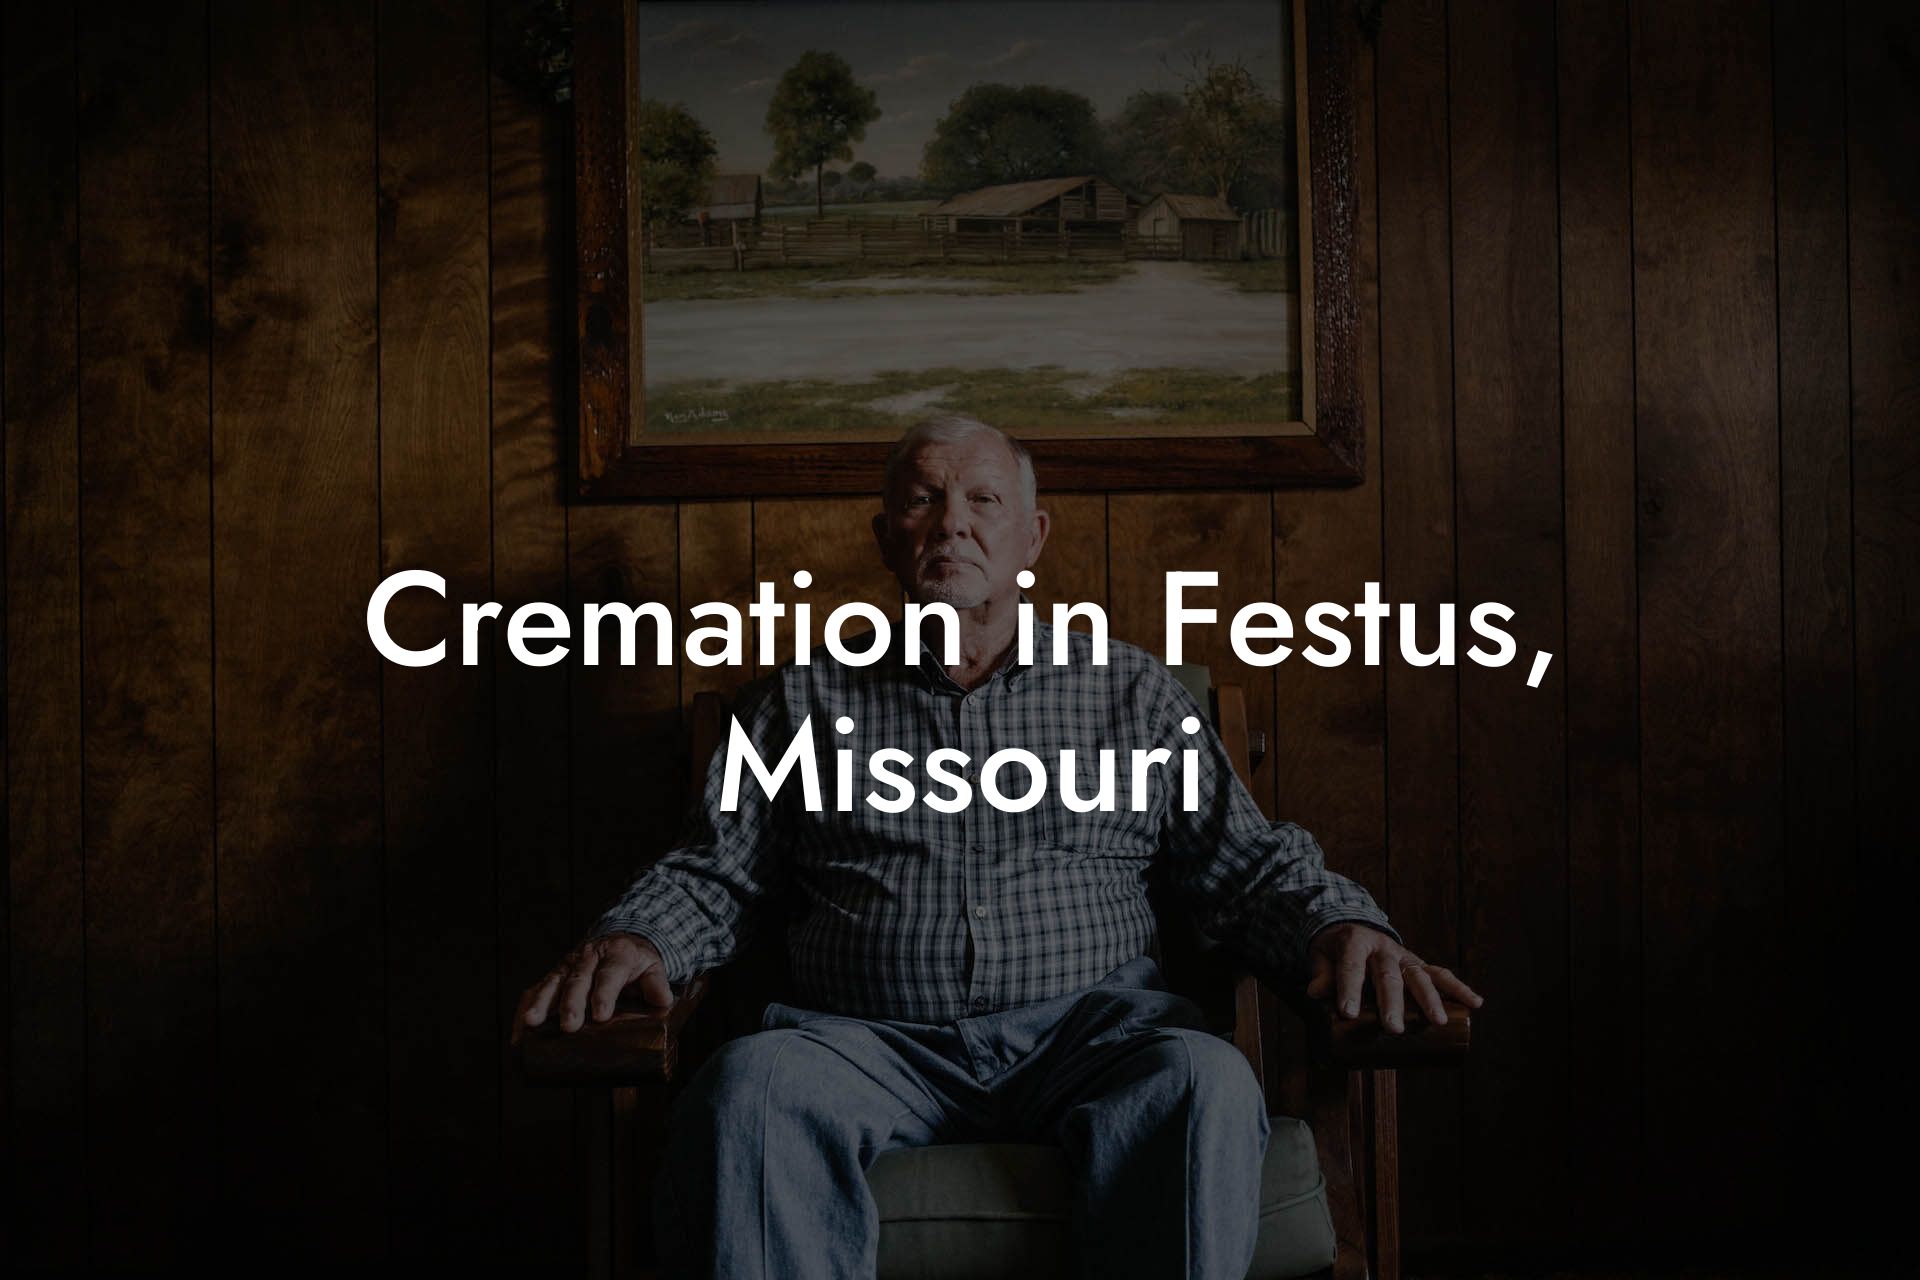 Cremation in Festus, Missouri